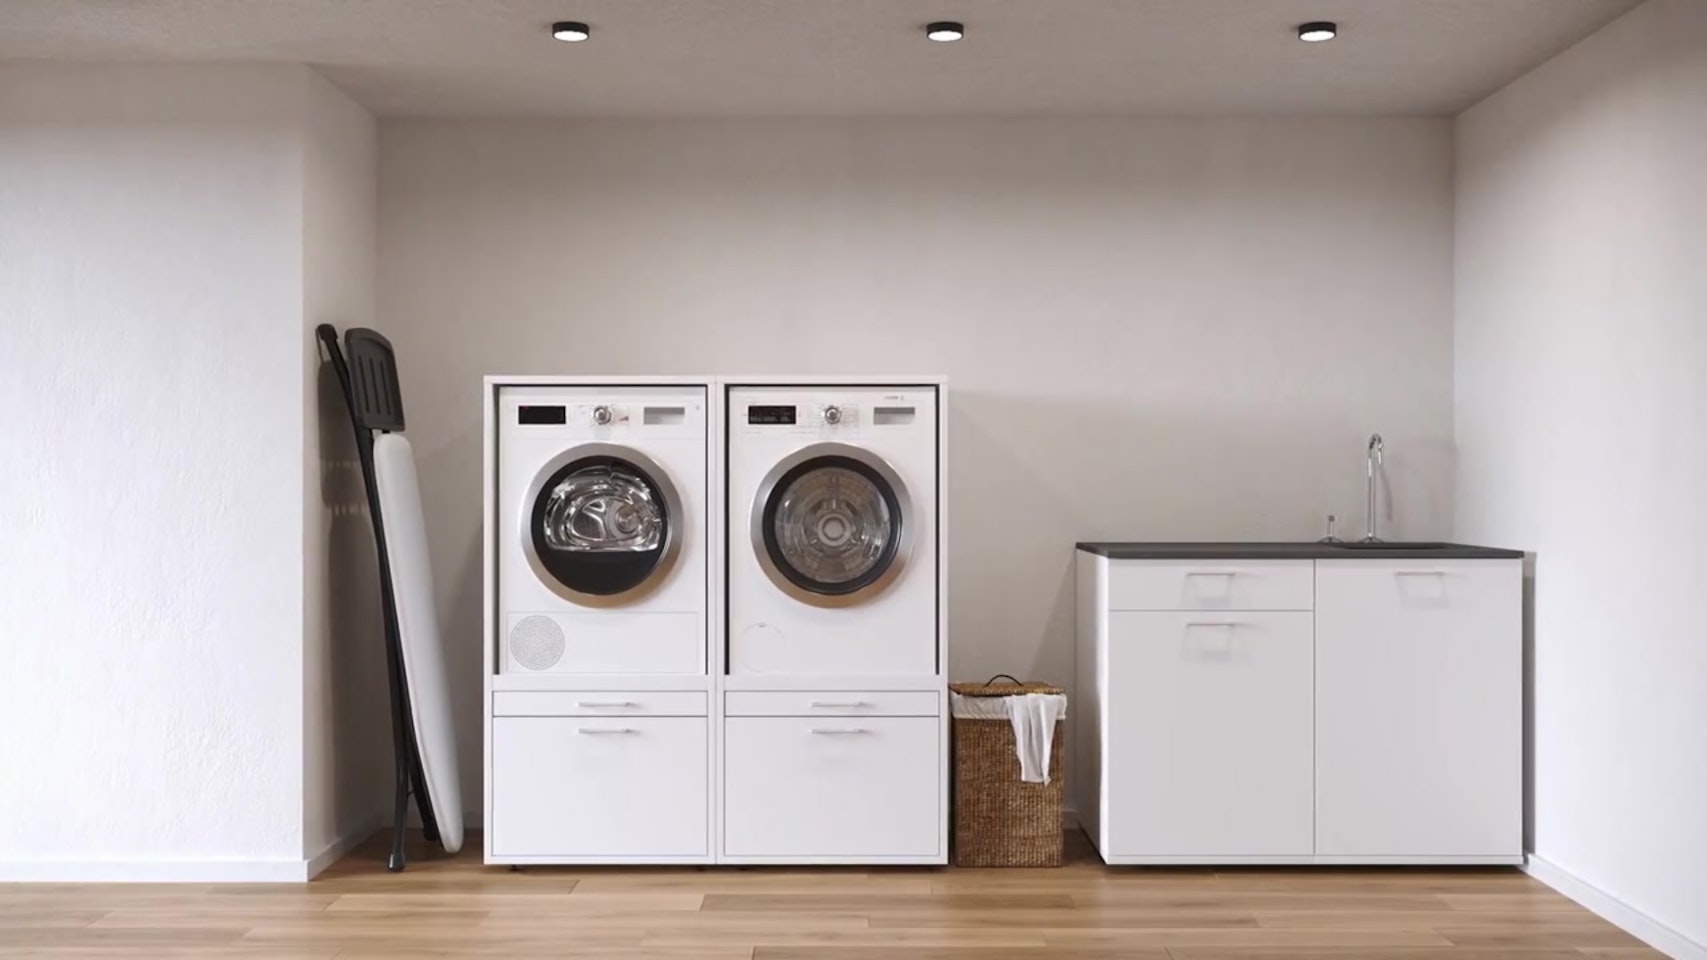 Entwurf eines Waschmaschinenschranks mit genug Stauraum zum organisieren des Hauswirtschaftsraums.